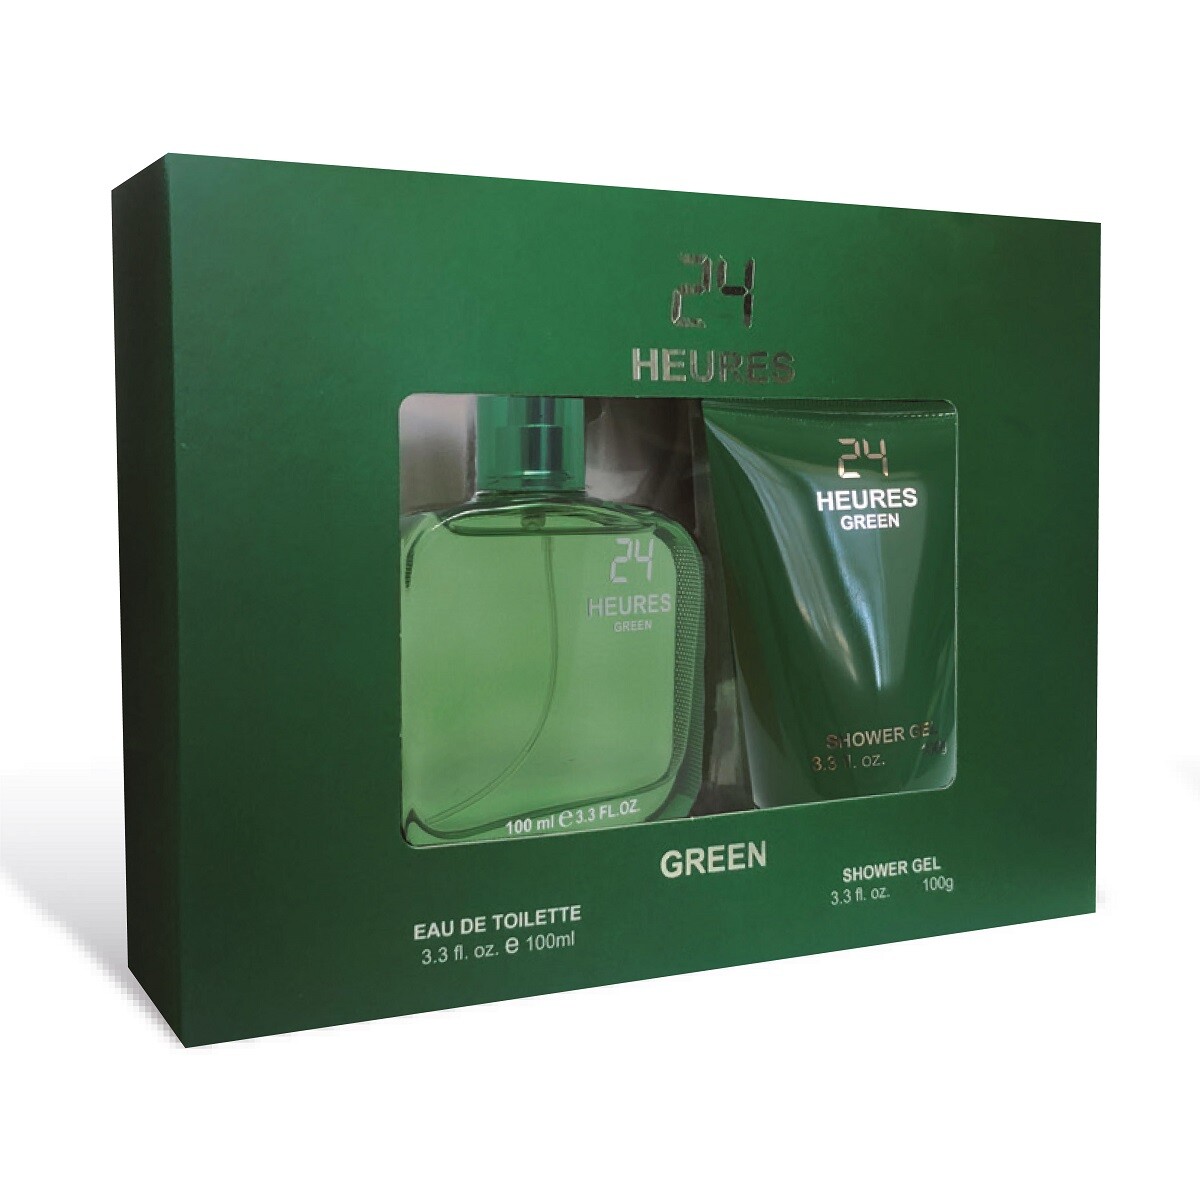 Perfume Casapueblo 24 Heures Green Edt 100 Ml. + Gel De Ducha 100 Ml. 